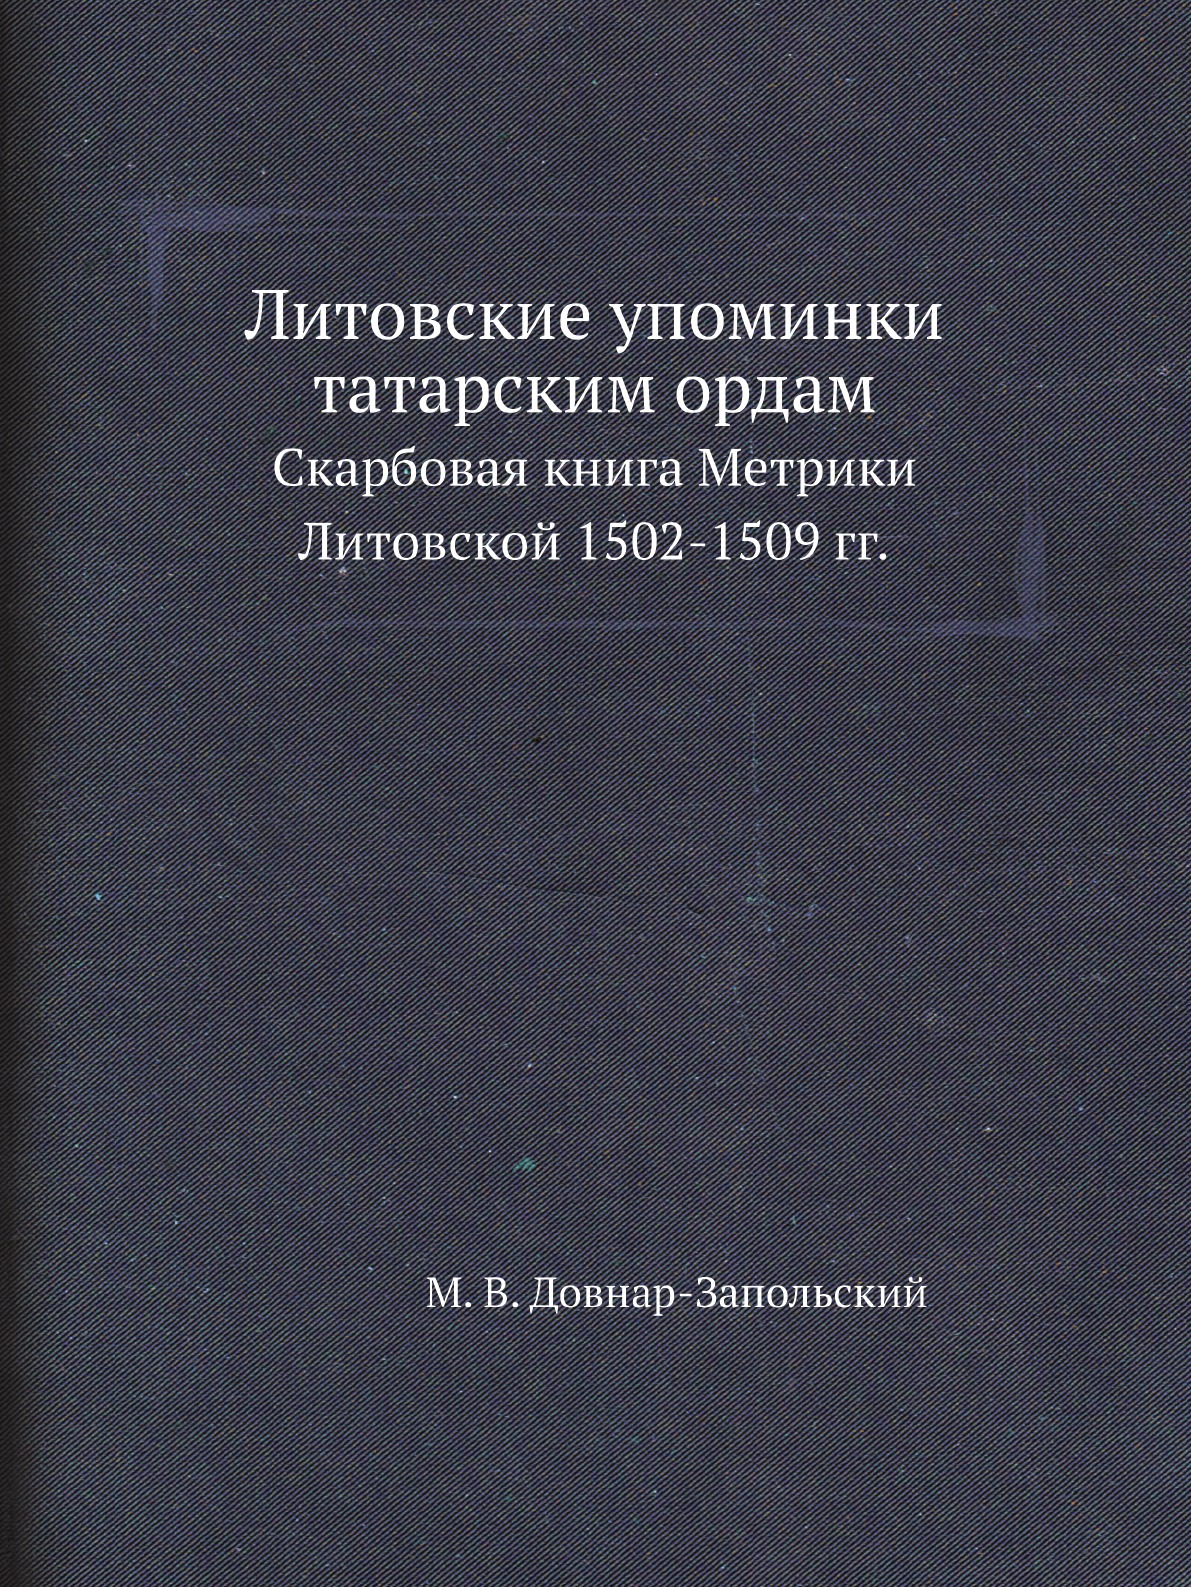 фото Книга литовские упоминки татарским ордам. скарбовая книга метрики литовской 1502-1509 гг. нобель пресс